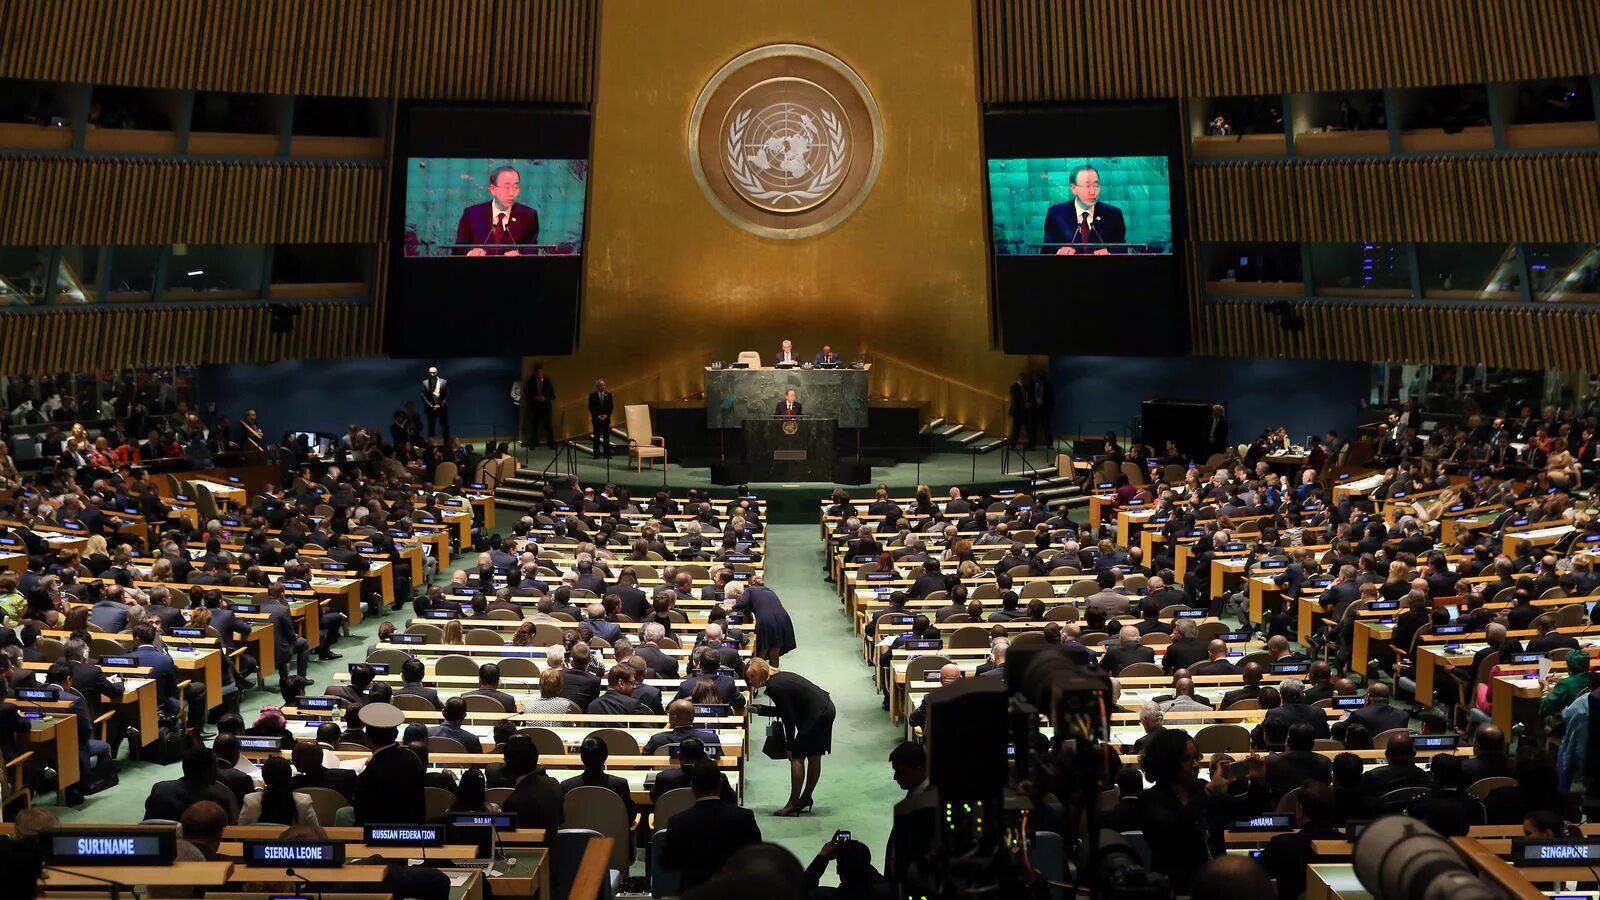 Трибуна оон. Генеральная Ассамблея ООН 2005. Трибуна Генассамблеи ООН. Зал заседания Генассамблеи ООН трибуна.